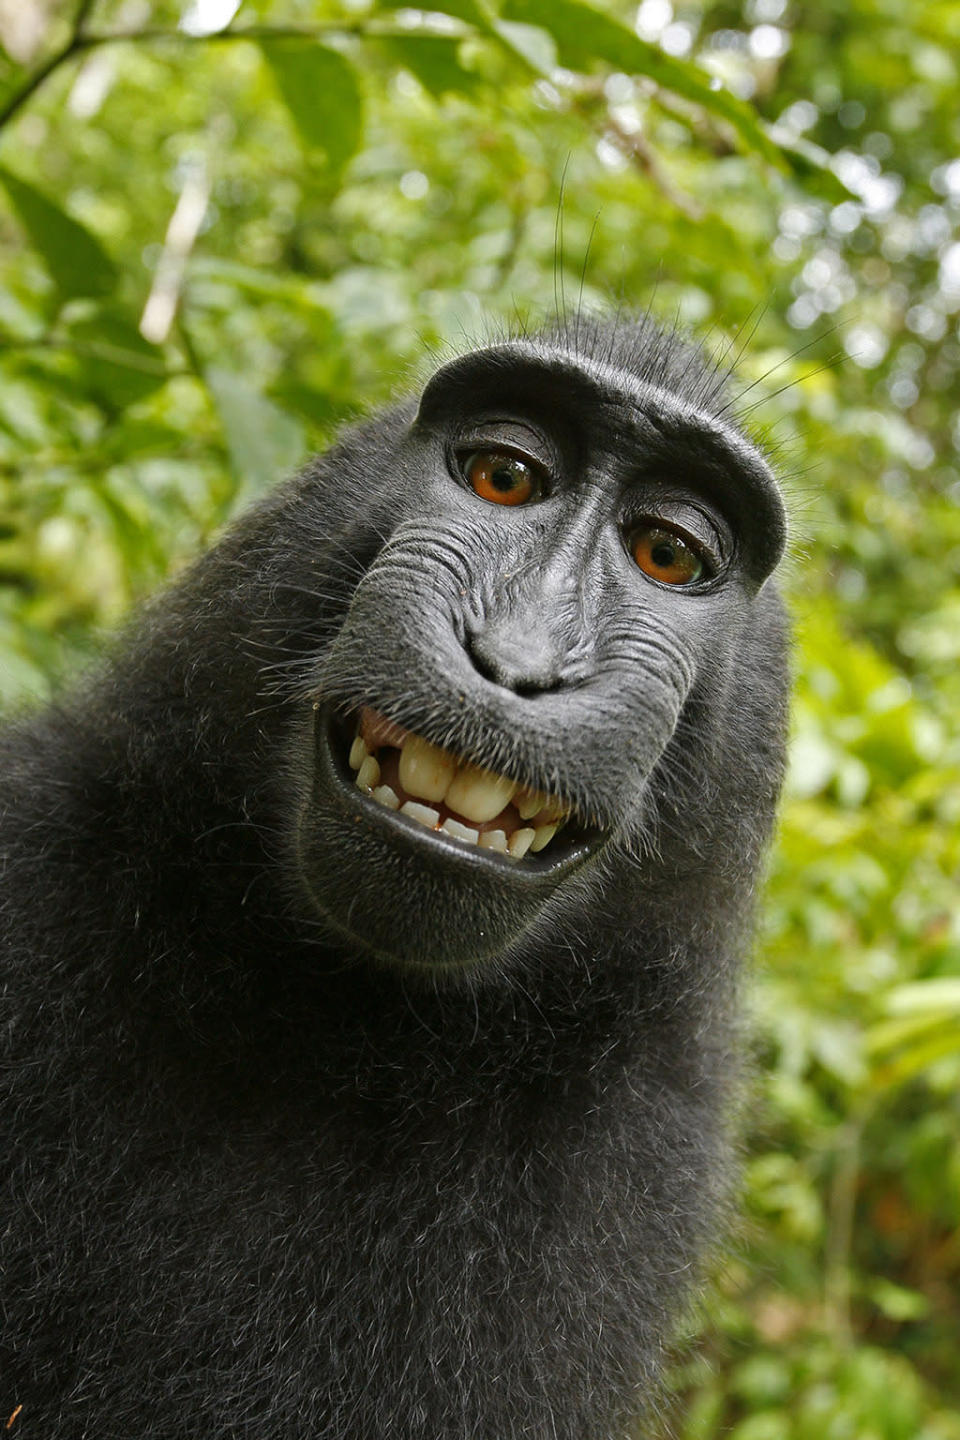 The Monkey Selfie